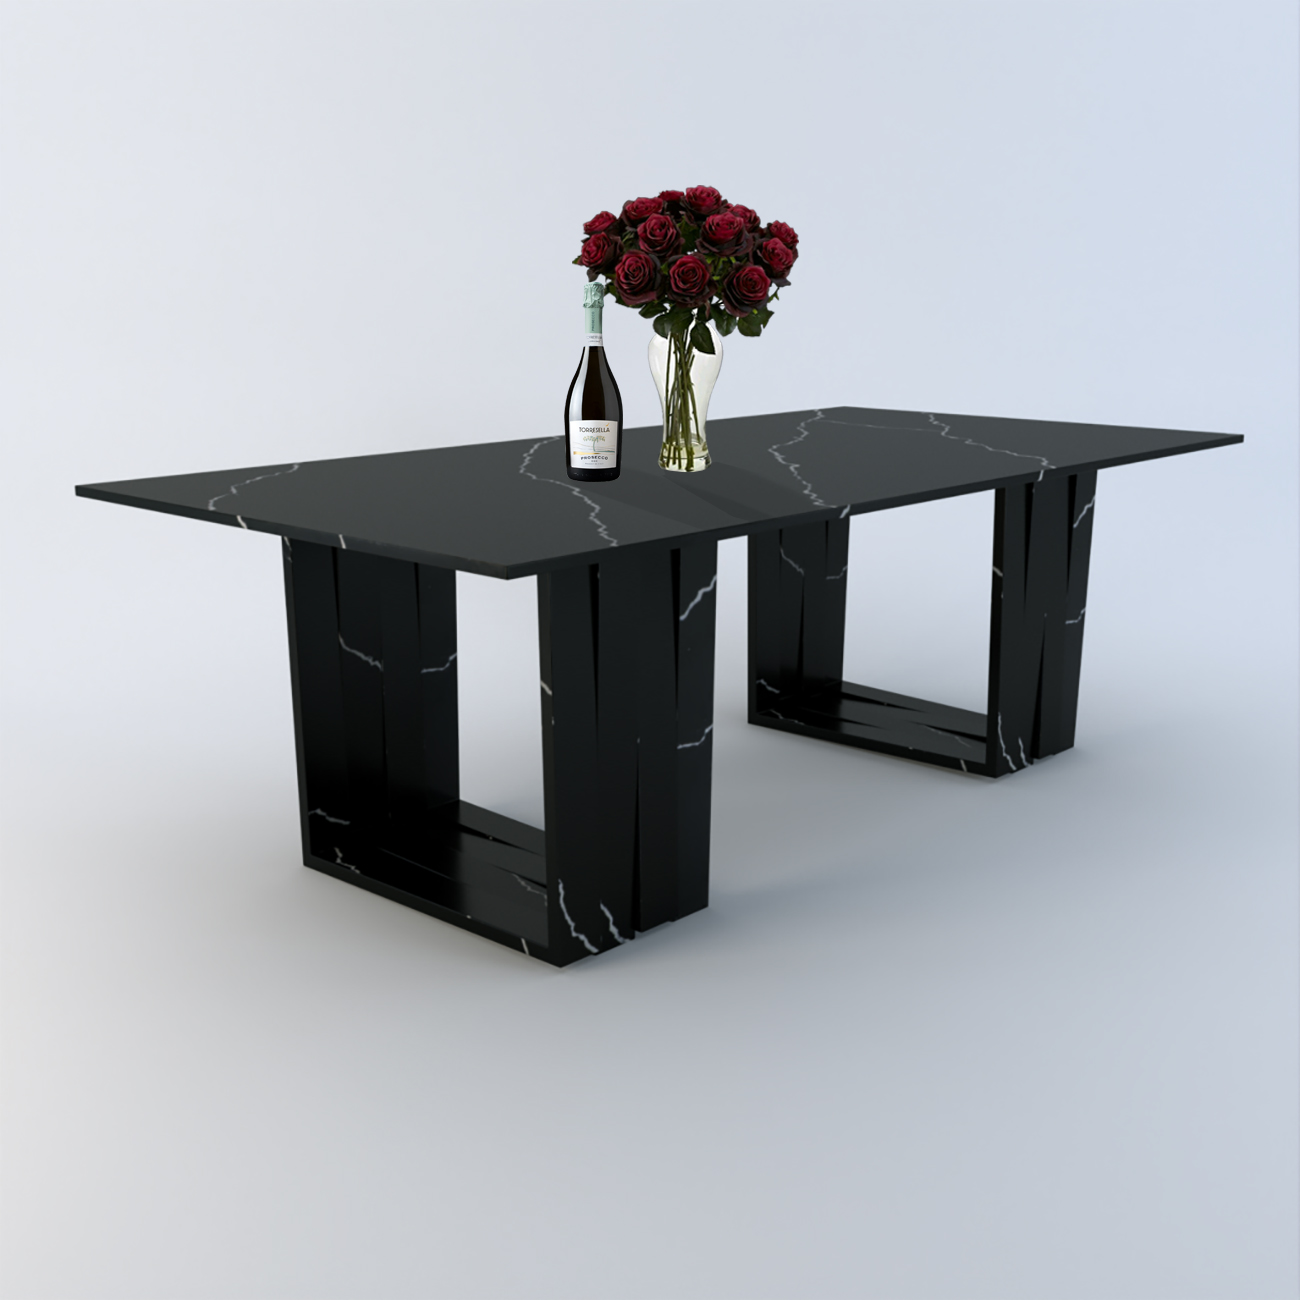 Aria Duo 2.4m Calacatta Quartz Dining Table